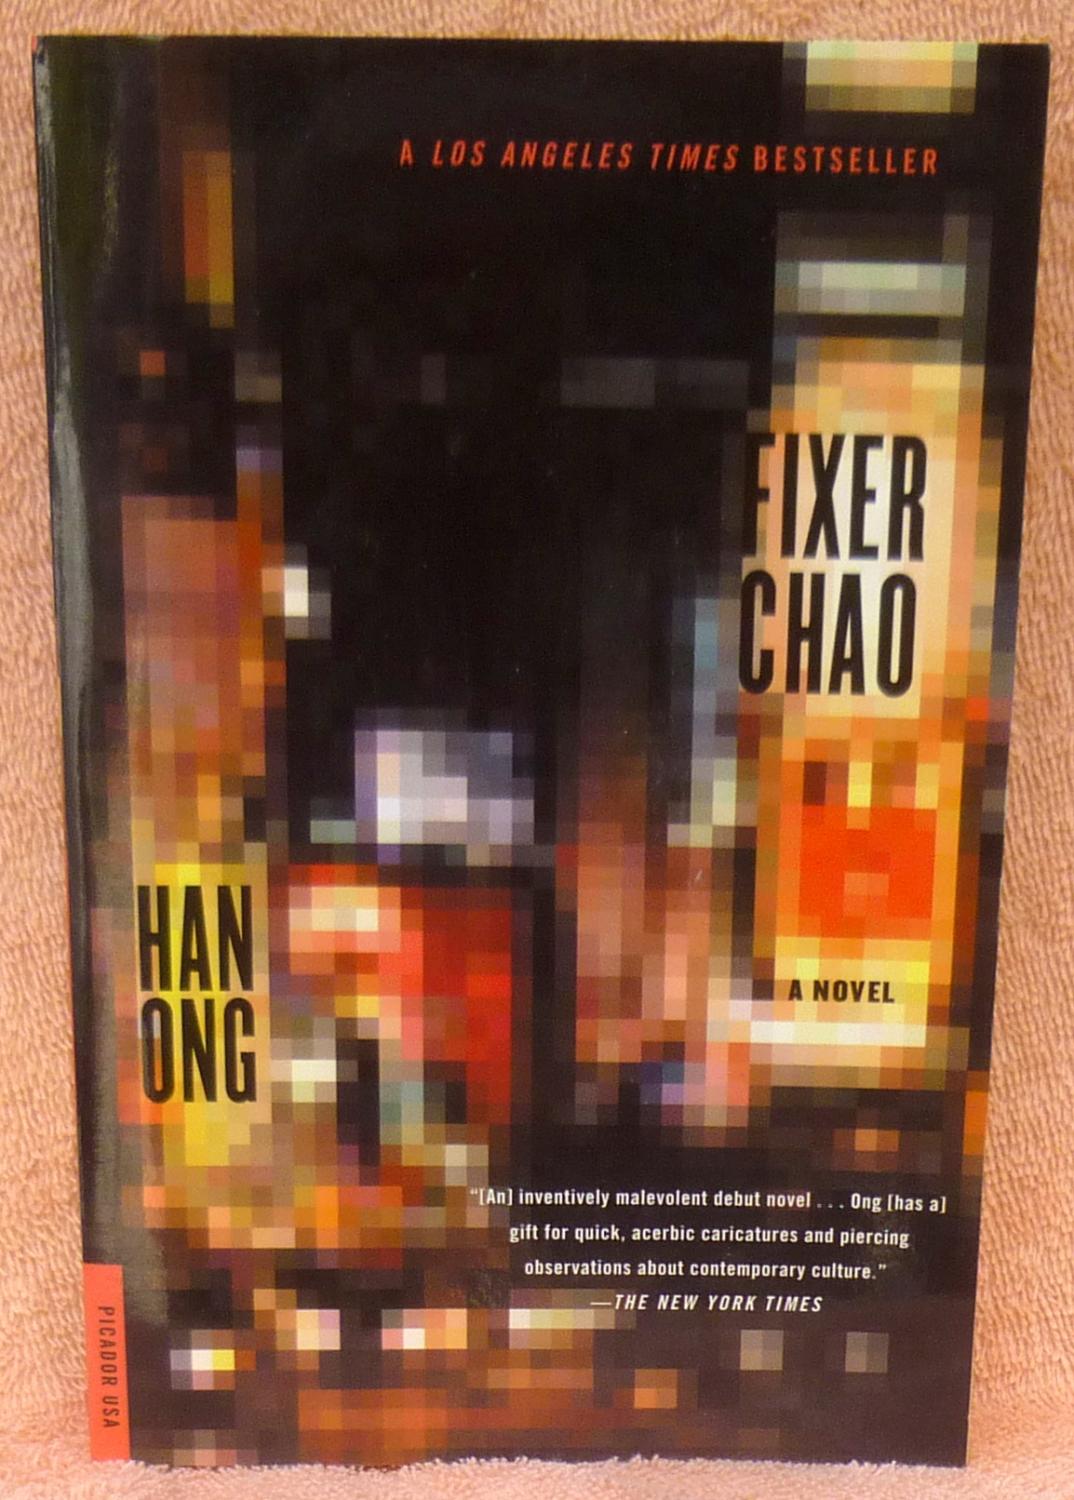 Fixer Chao: A Novel - Ong, Han: 9780312420536 - AbeBooks